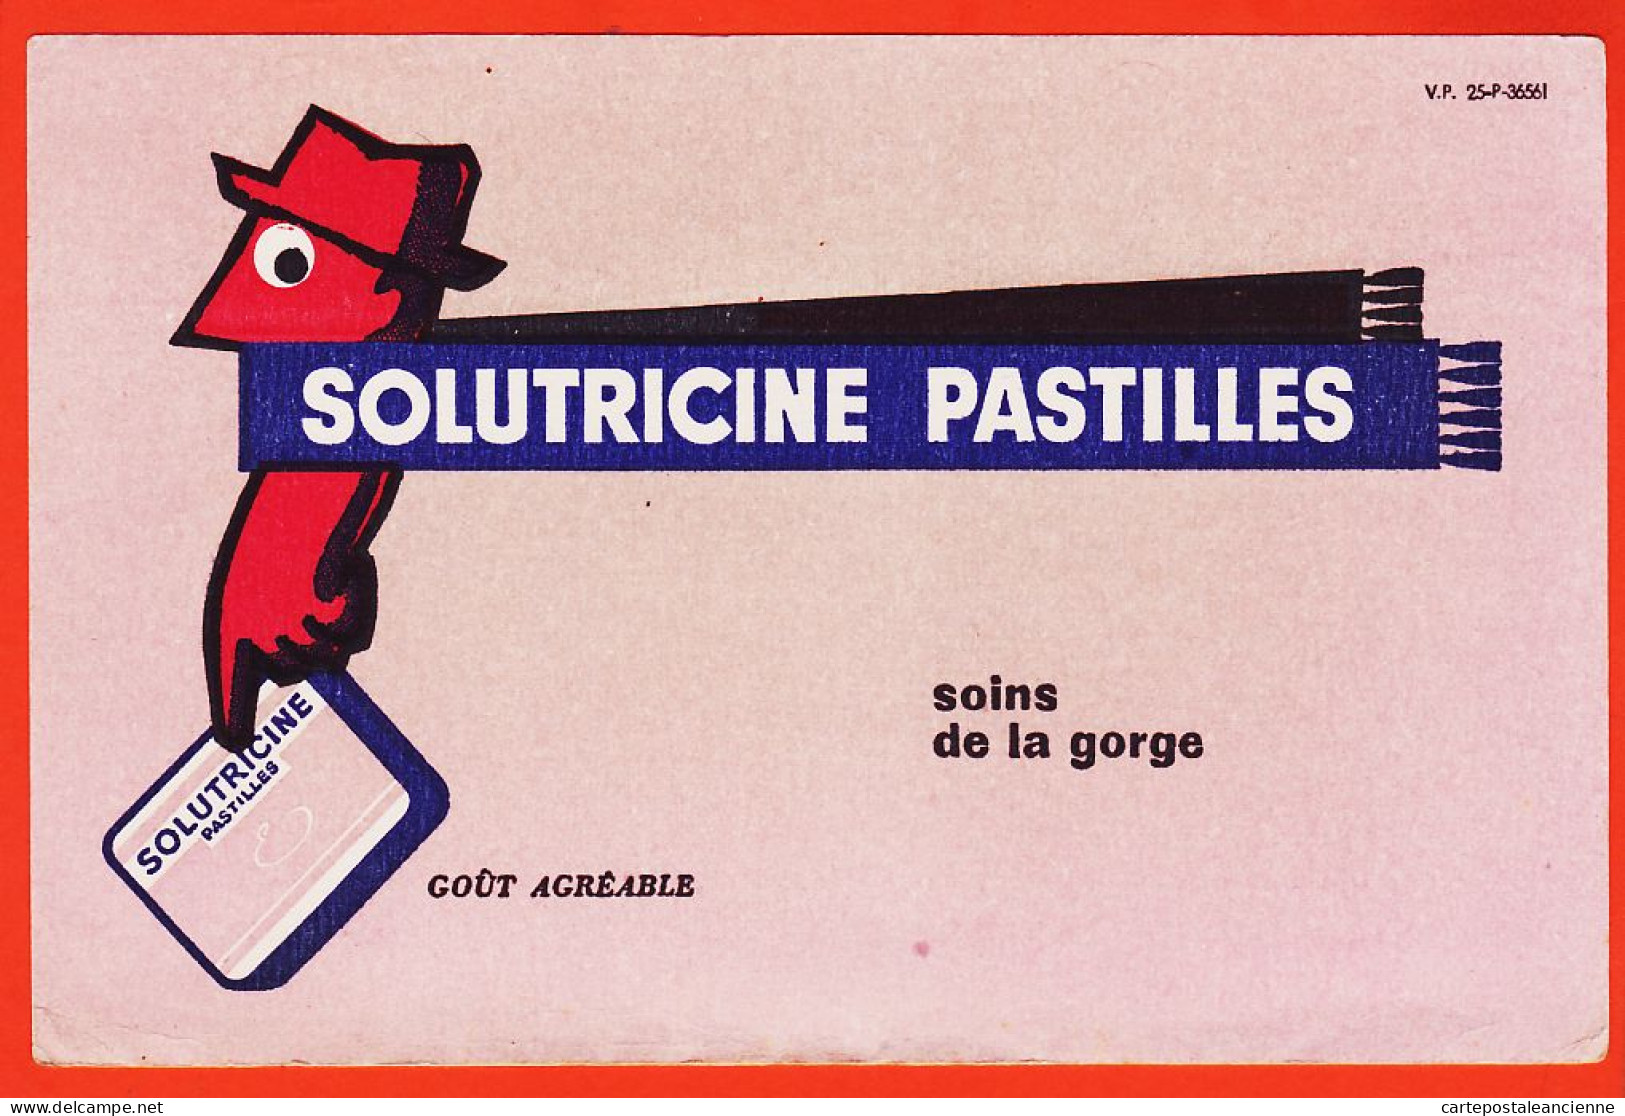 06151 / SOLUTRICINE Pastilles Soins De La Gorge Goût Agréable V-P 25-P-36561 Buvard-Blotter - Produits Pharmaceutiques